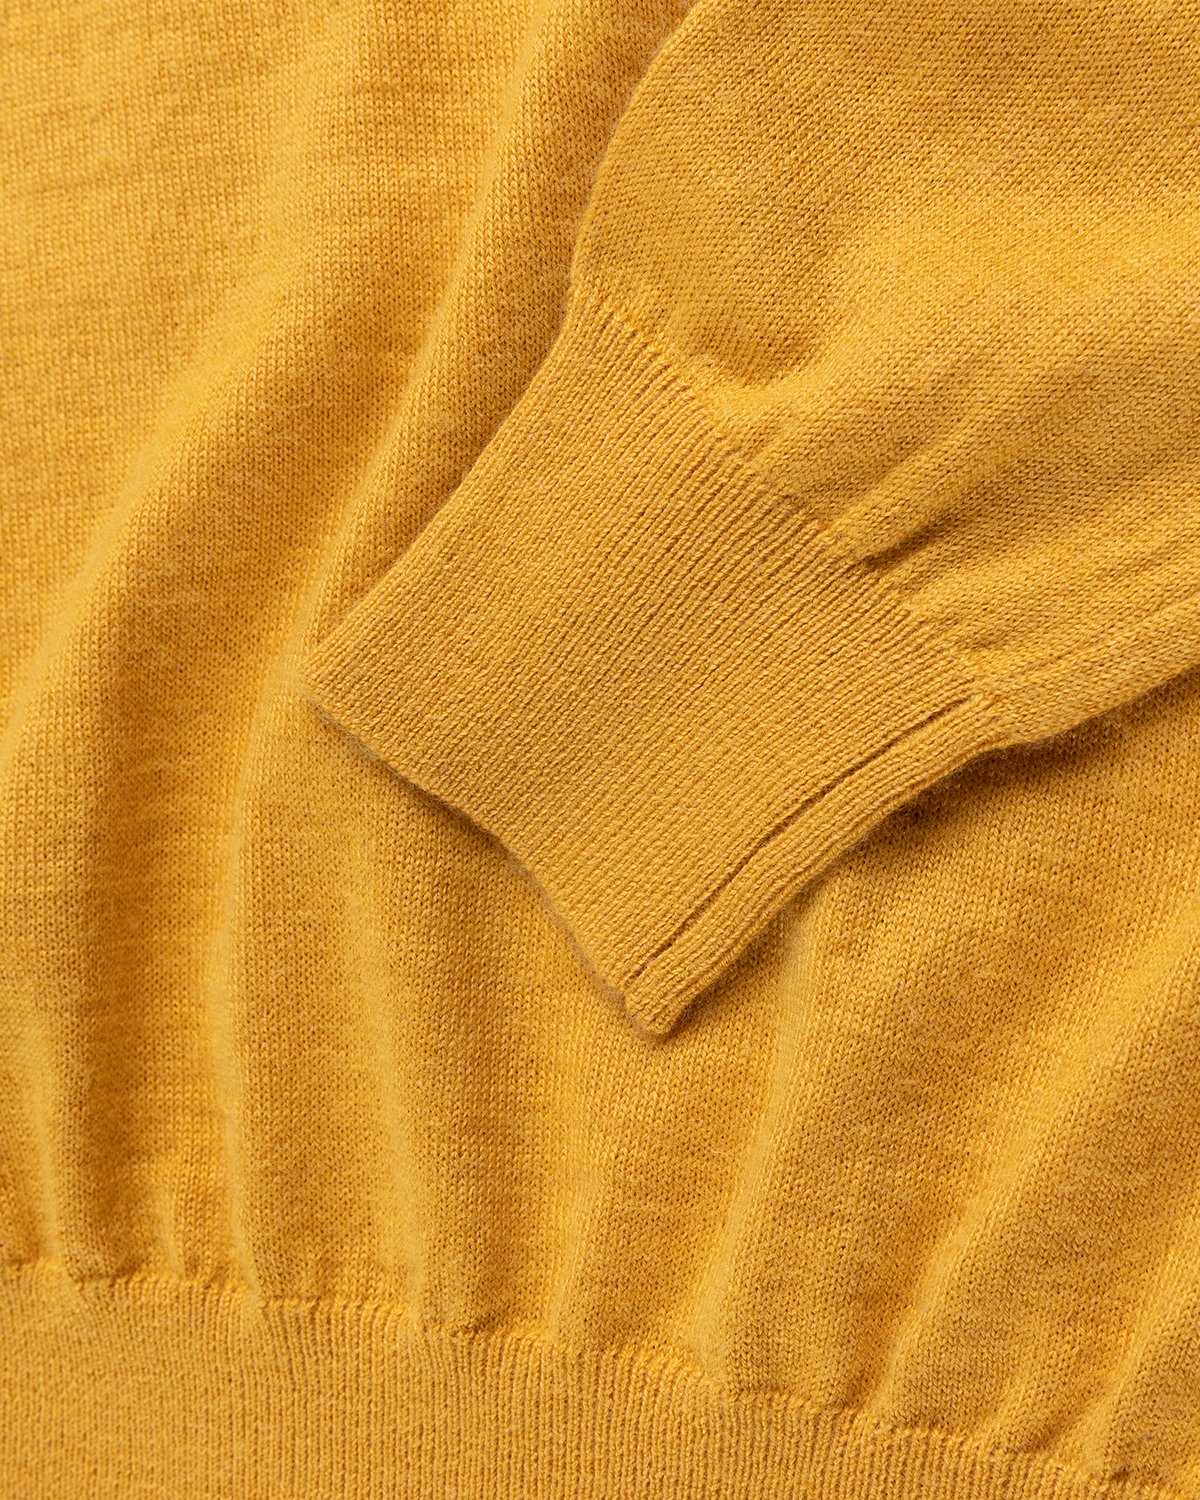 Winnie New York - Crew Sweater Mustard - Clothing - Yellow - Image 4